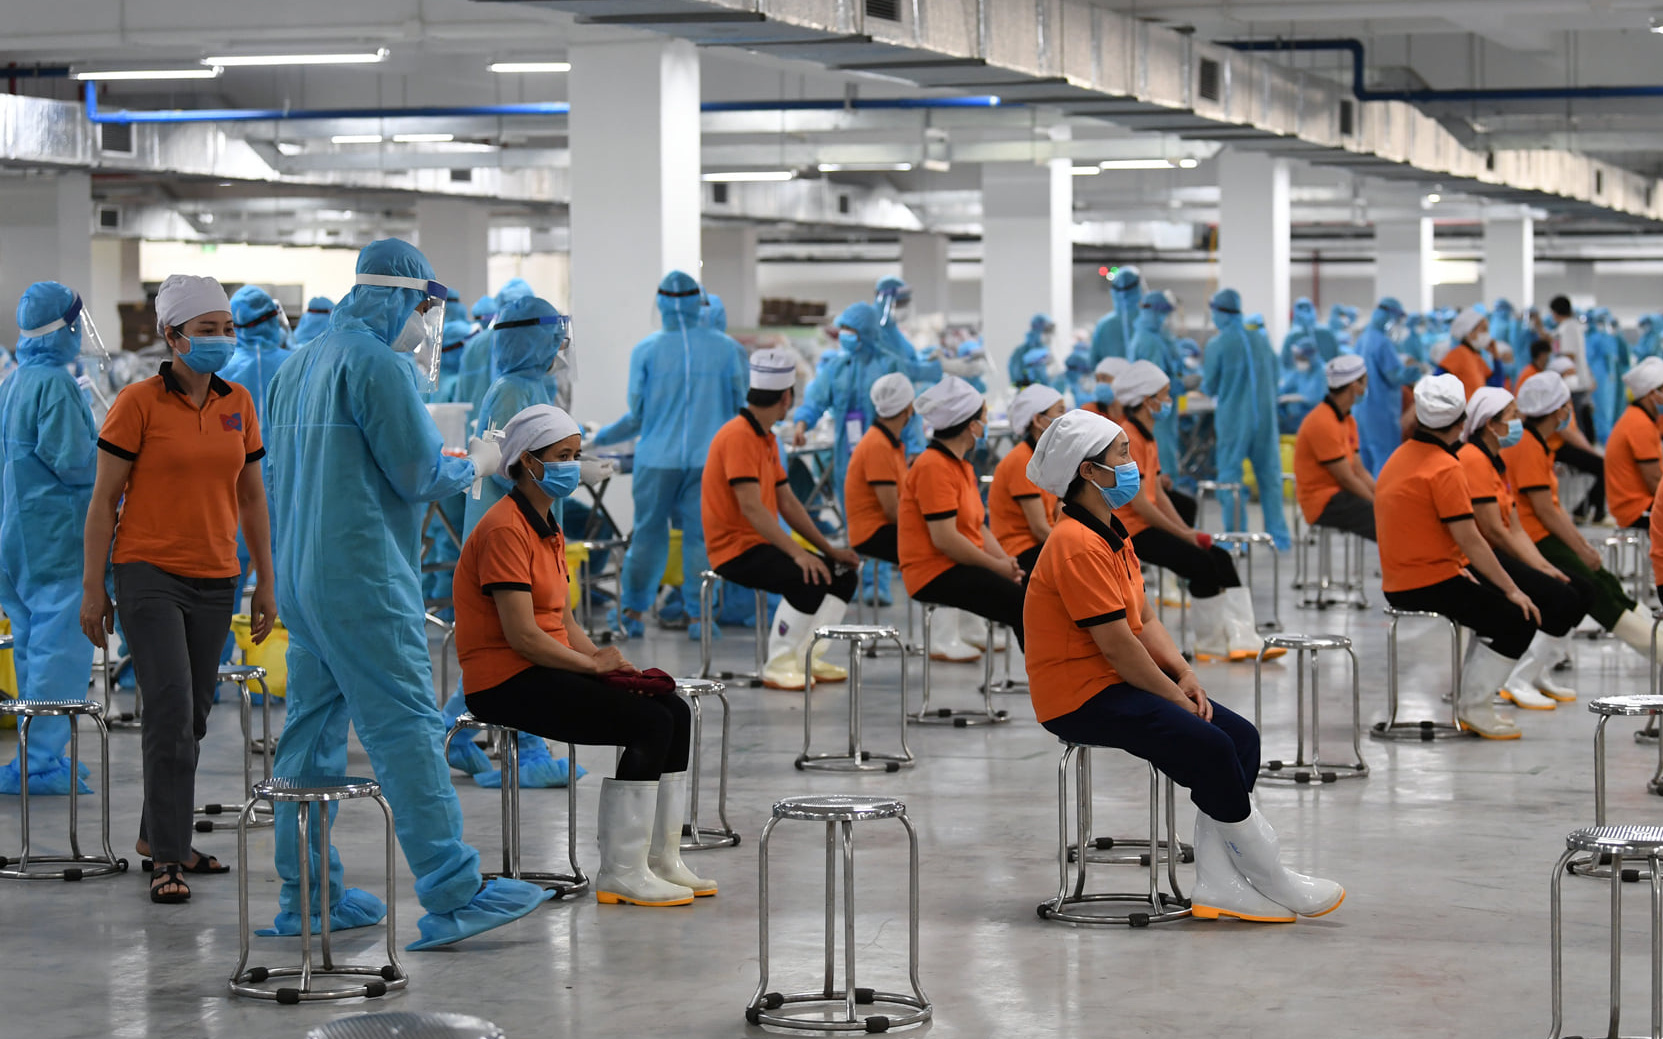 XÉT NGHIỆM XUYÊN ĐÊM, tin tức Mới nhất Hà Nội xuyên đêm xét nghiệm 1.500  công nhân thuộc khu công nghiệp nơi ghi nhận nam bảo vệ dương tính SARS-CoV- 2 - Đọc